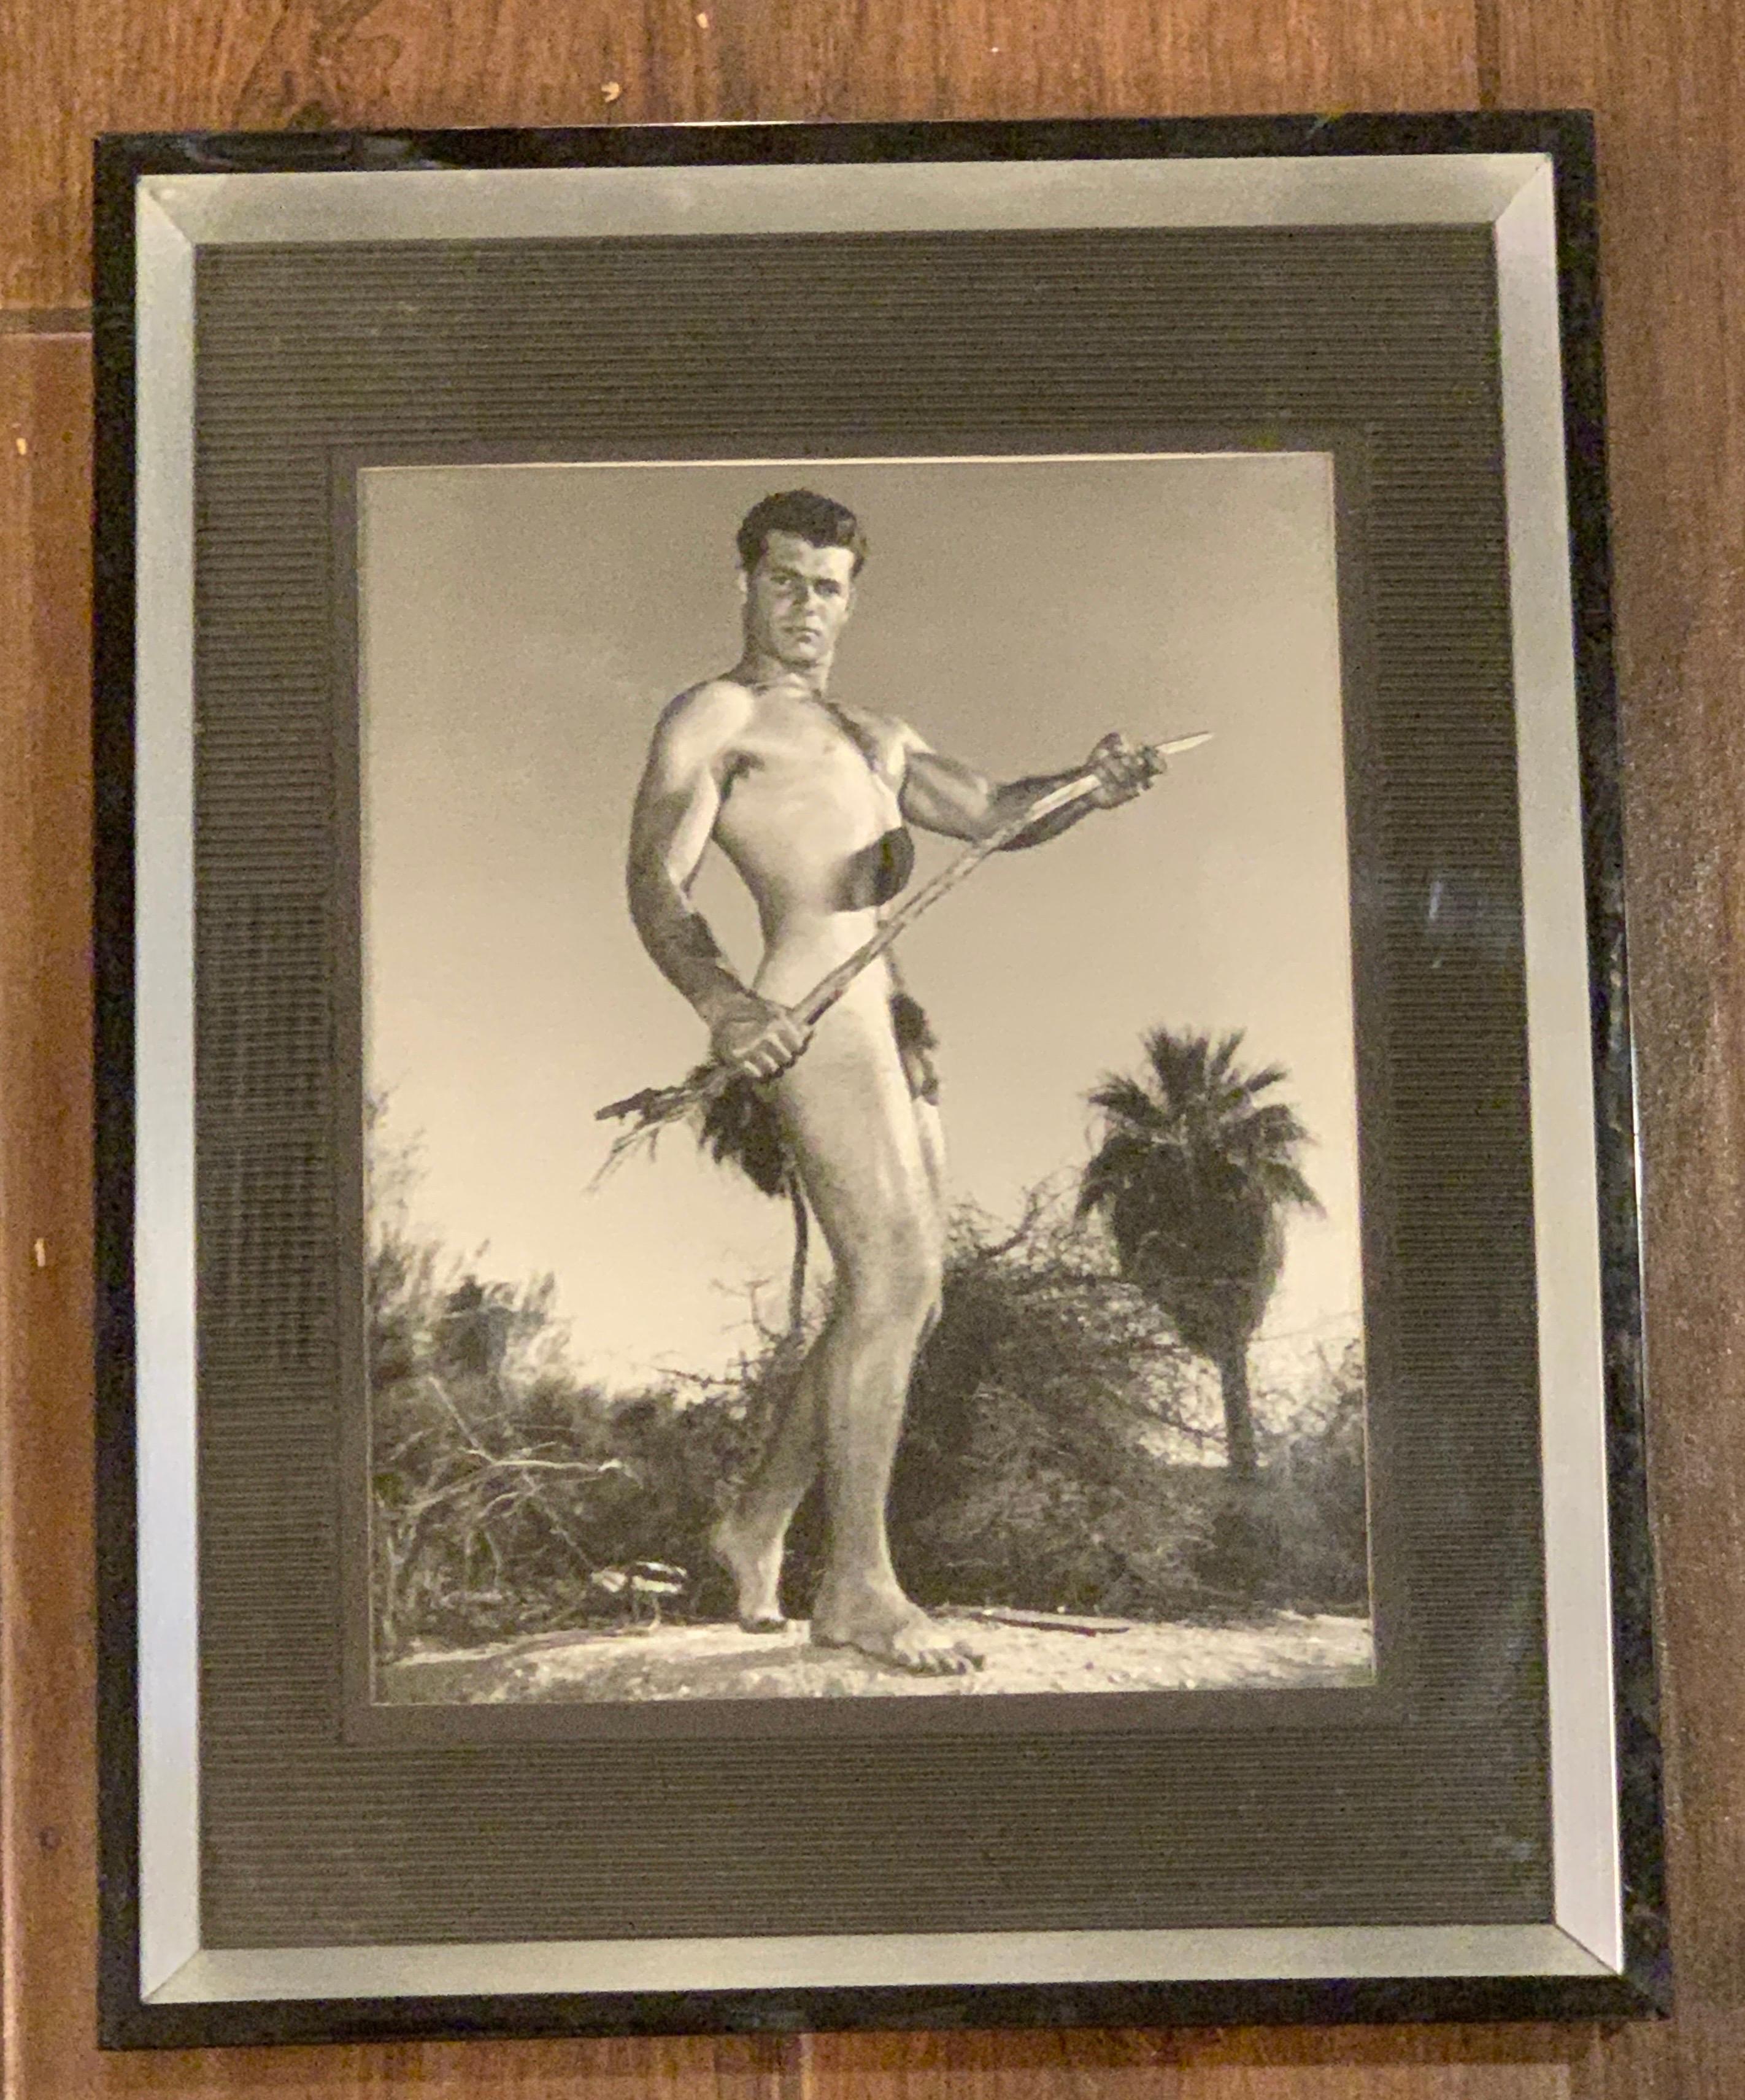 Une autre photographie originale 8 x 10 en noir et blanc du photographe de renommée mondiale Bruce Bellas AKA Bruce of L.A. Nous avons vendu de nombreux exemplaires sur 1st Dibs de notre collection personnelle de plus de 40 ans. Veuillez noter qu'il